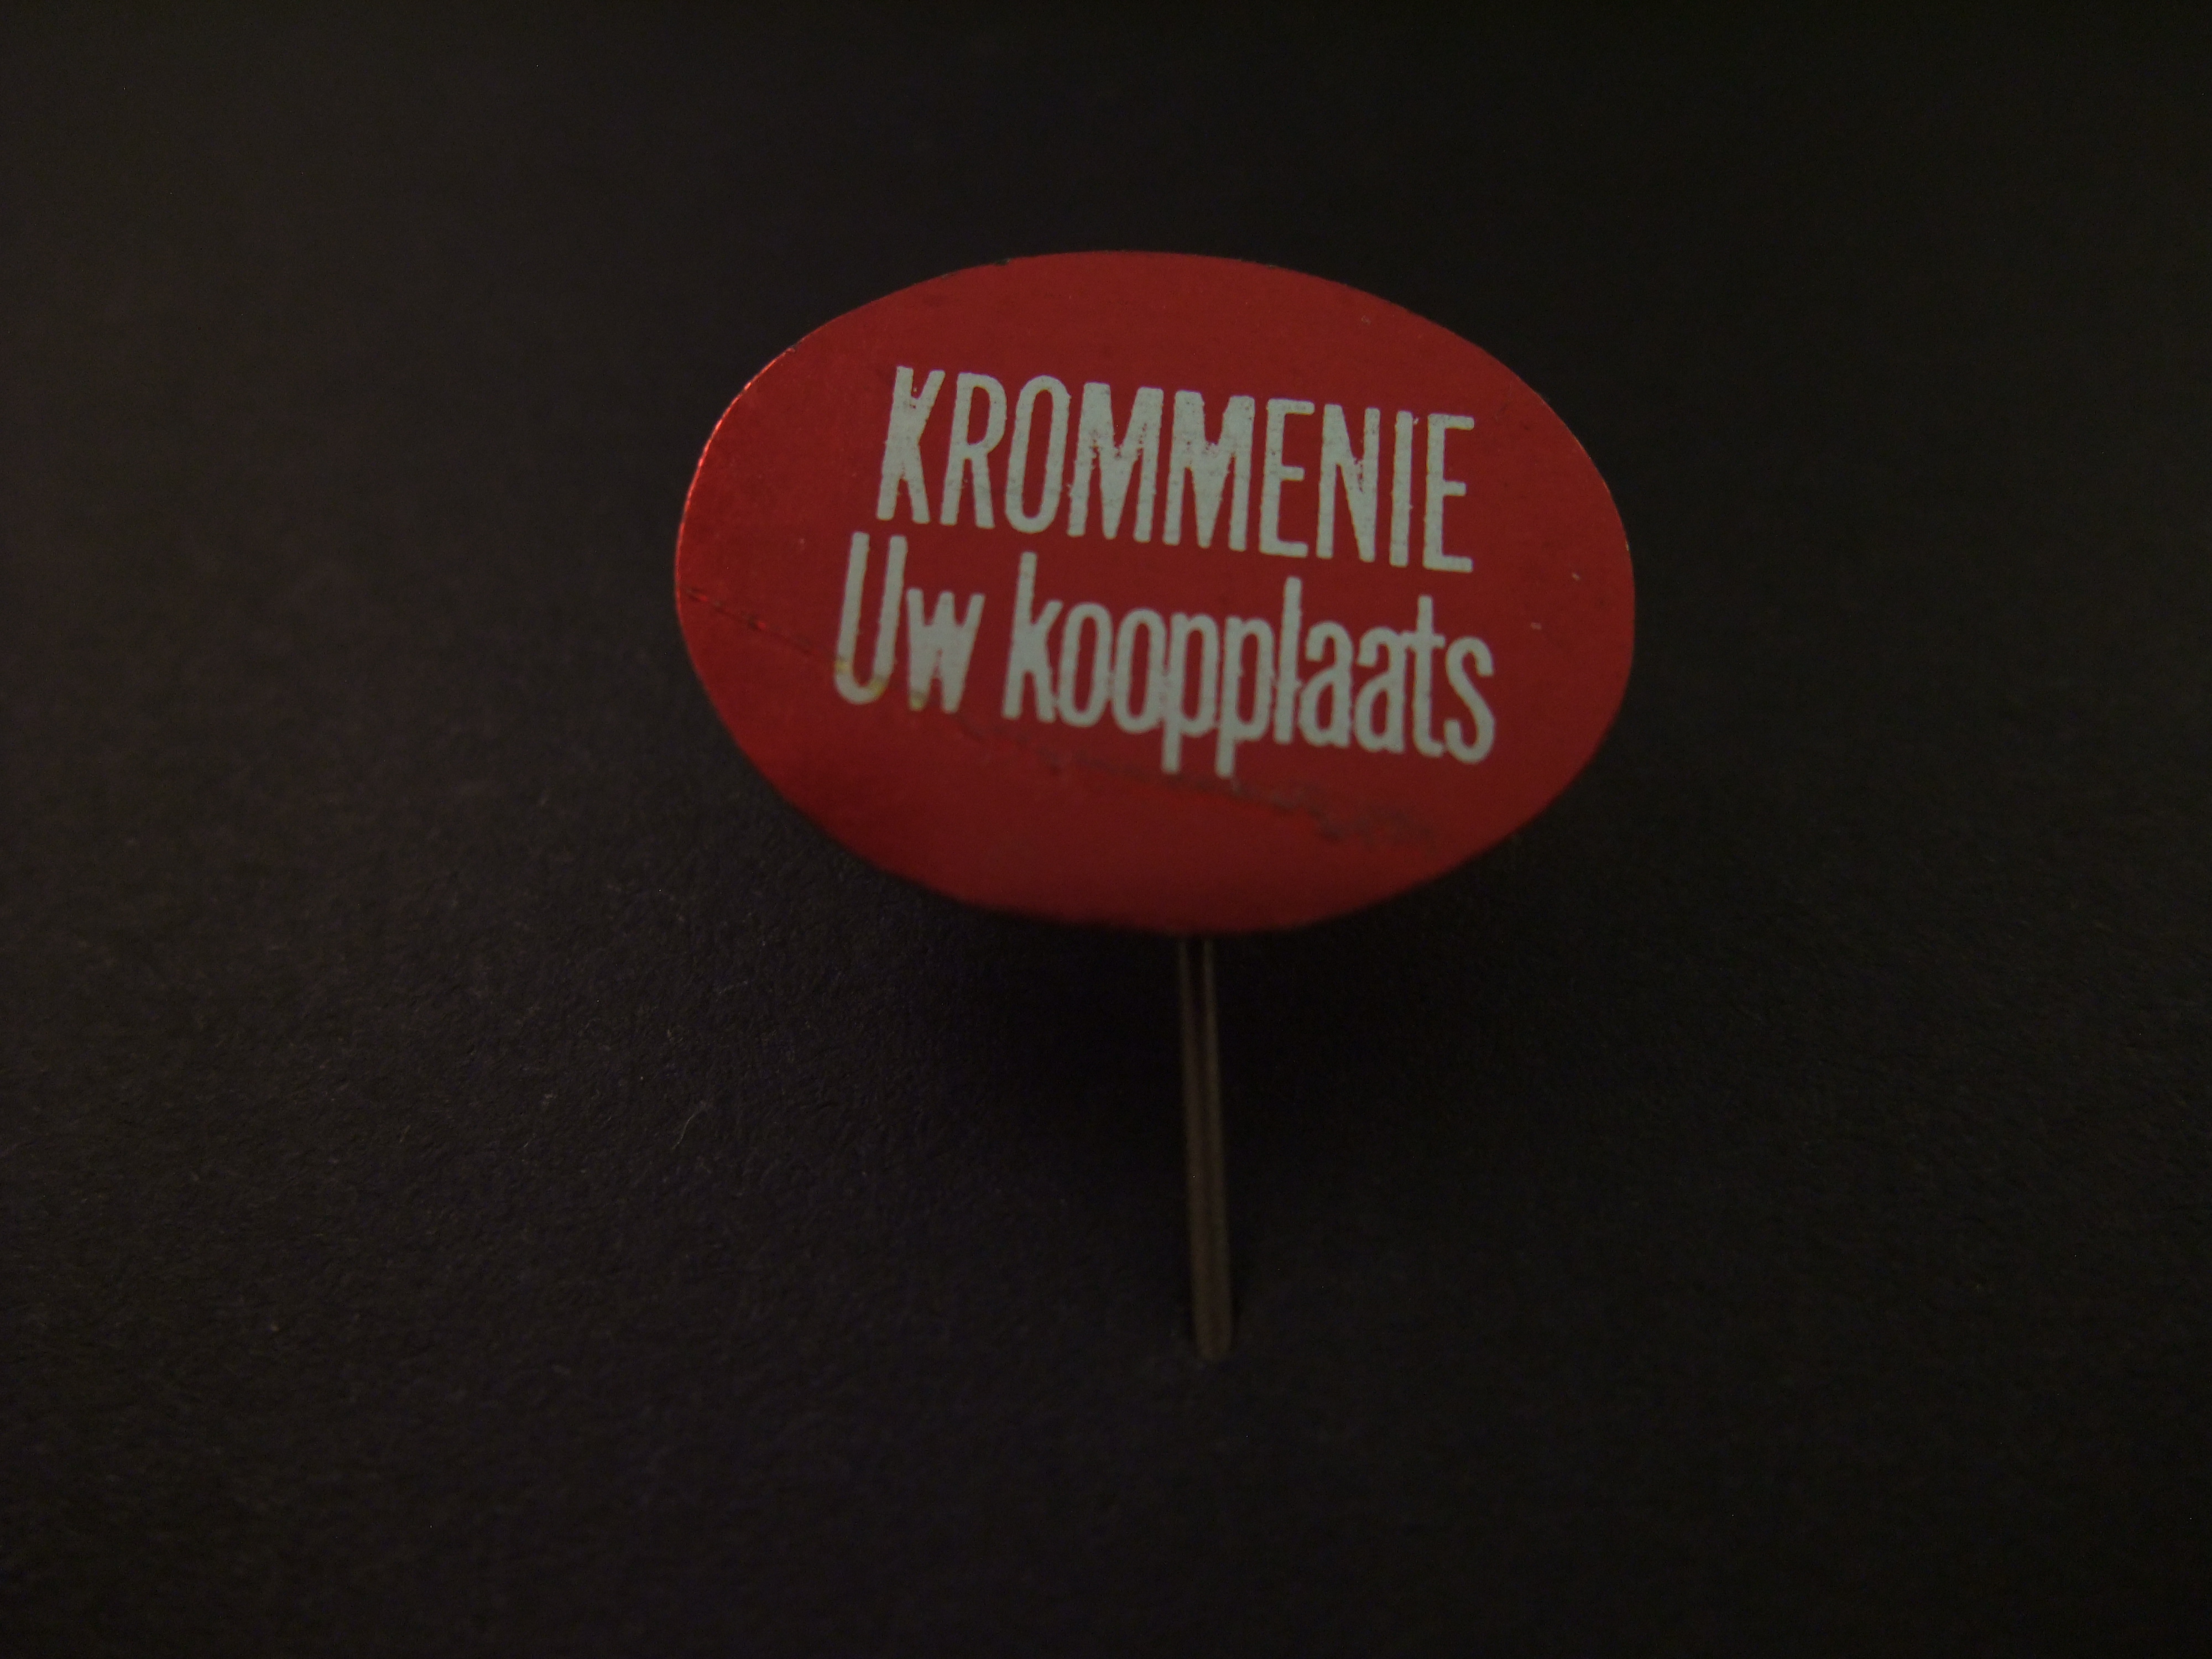 Krommenie ( gemeente Zaanstad) Uw koopplaats rood